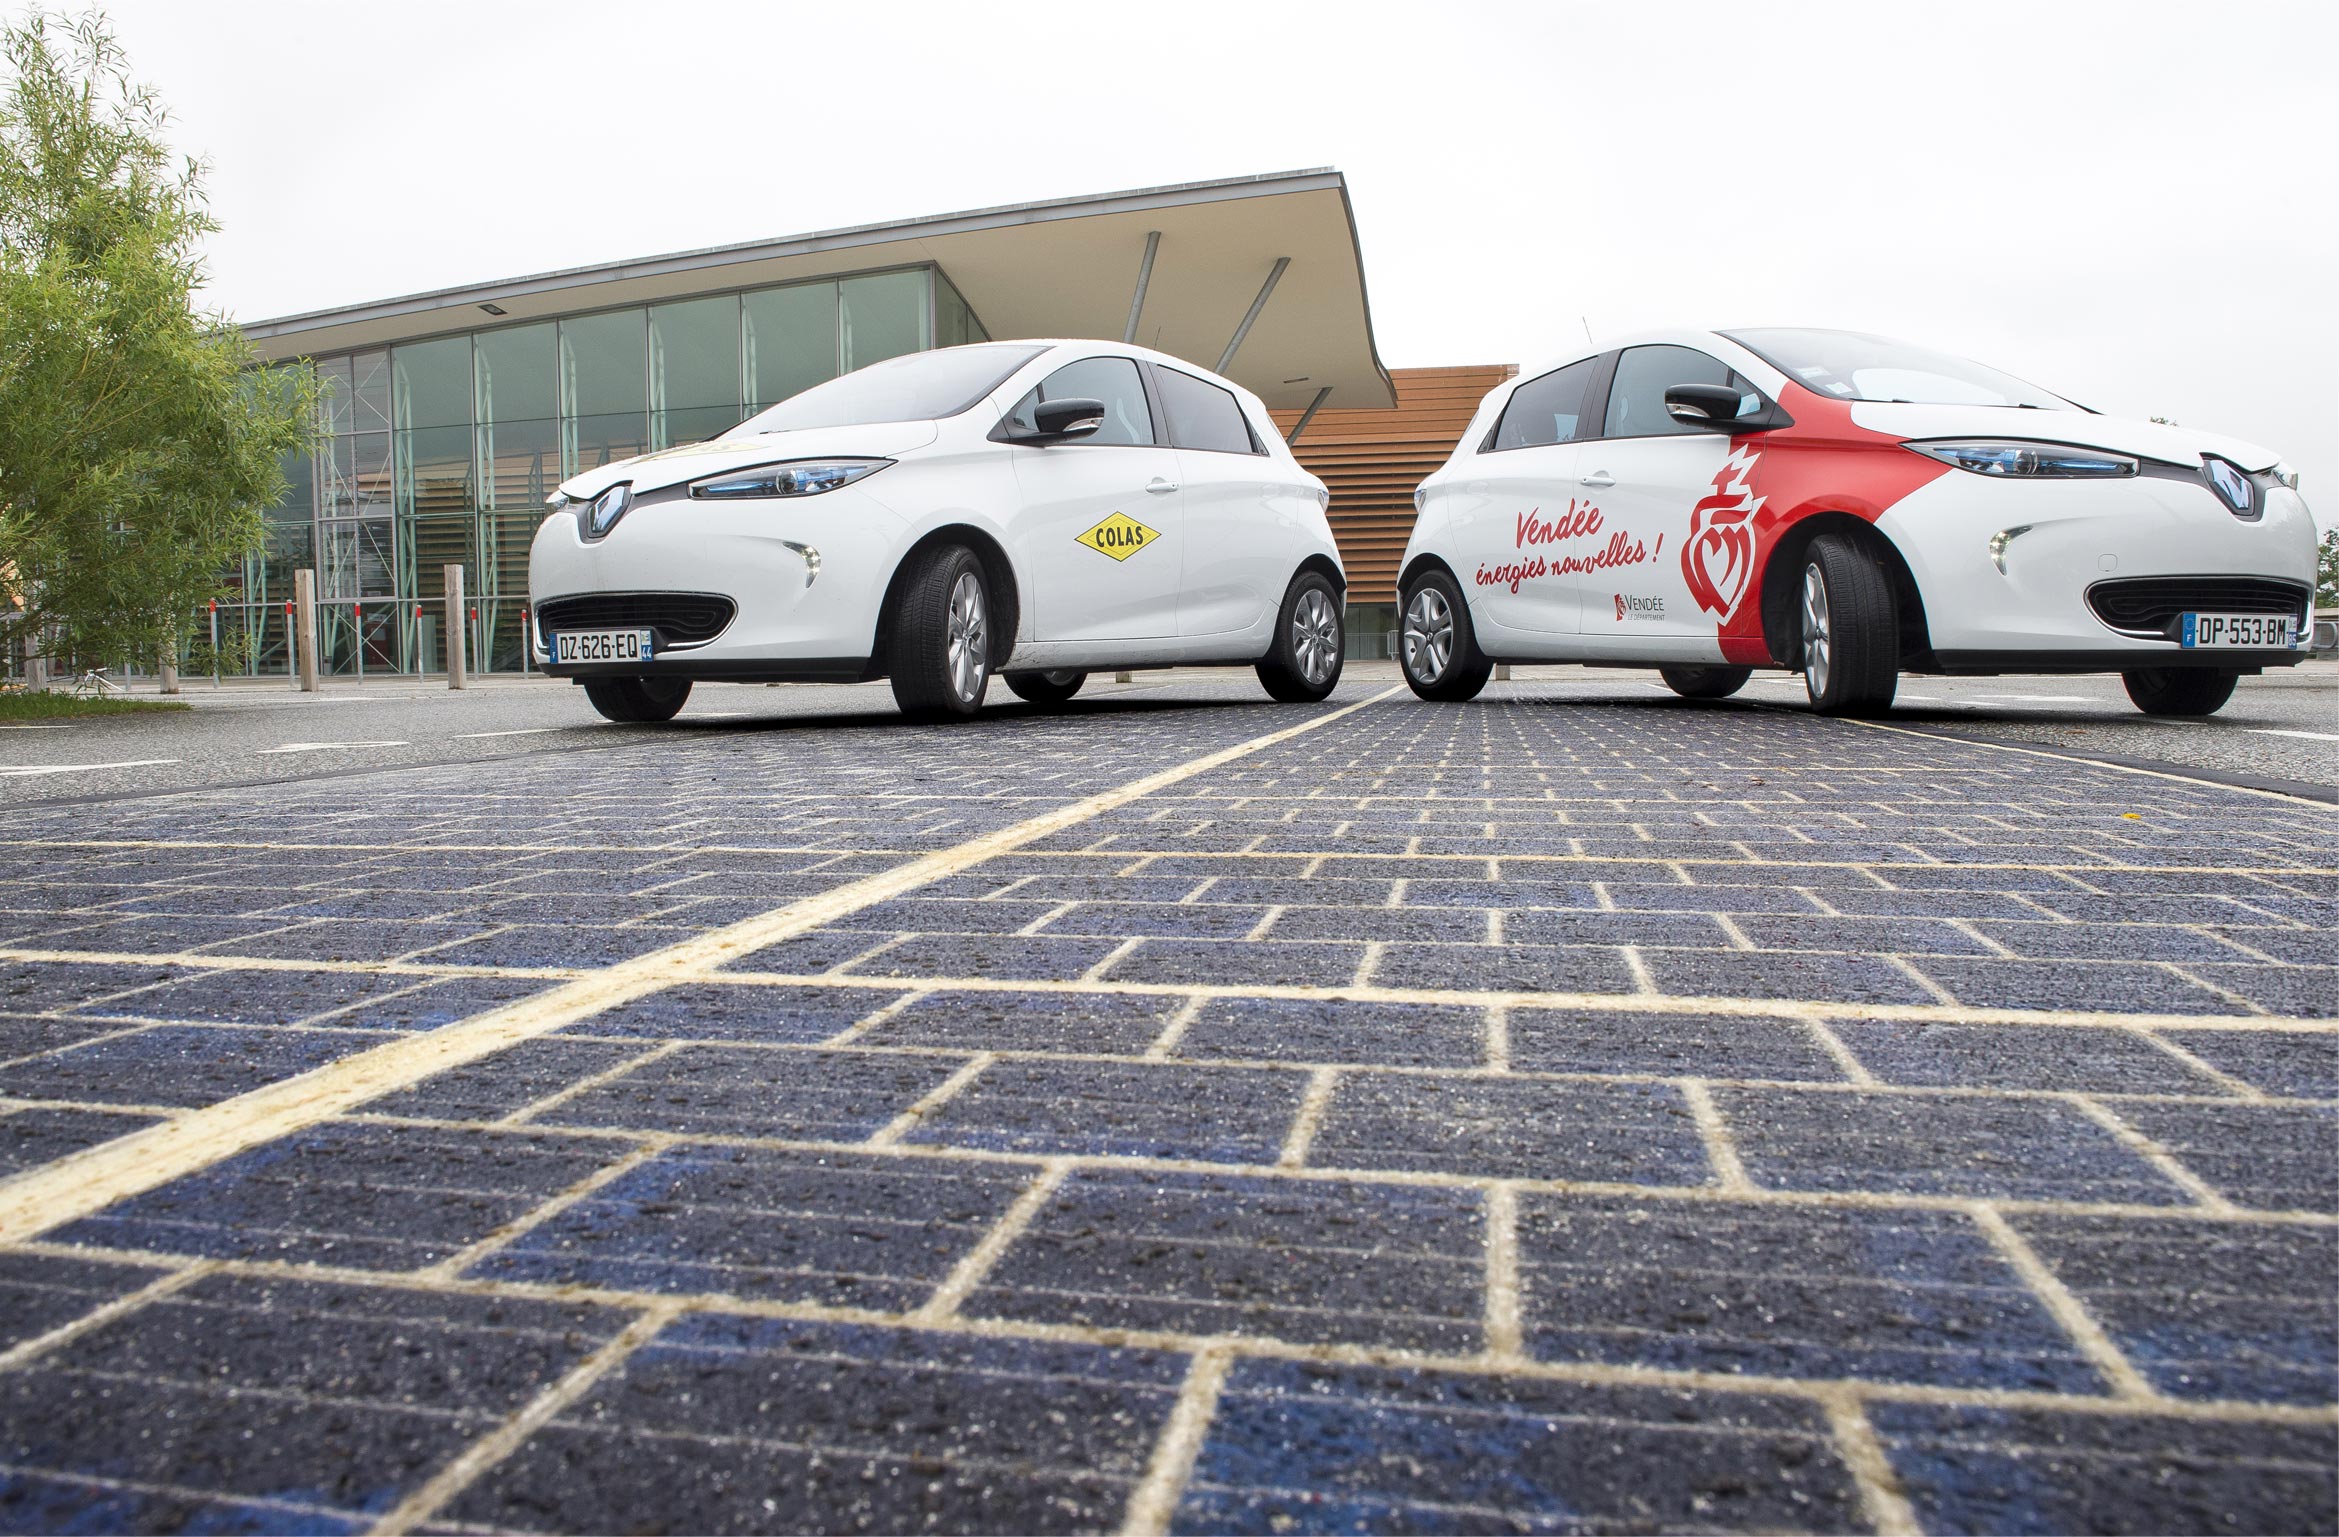 colas-solar-road-panels